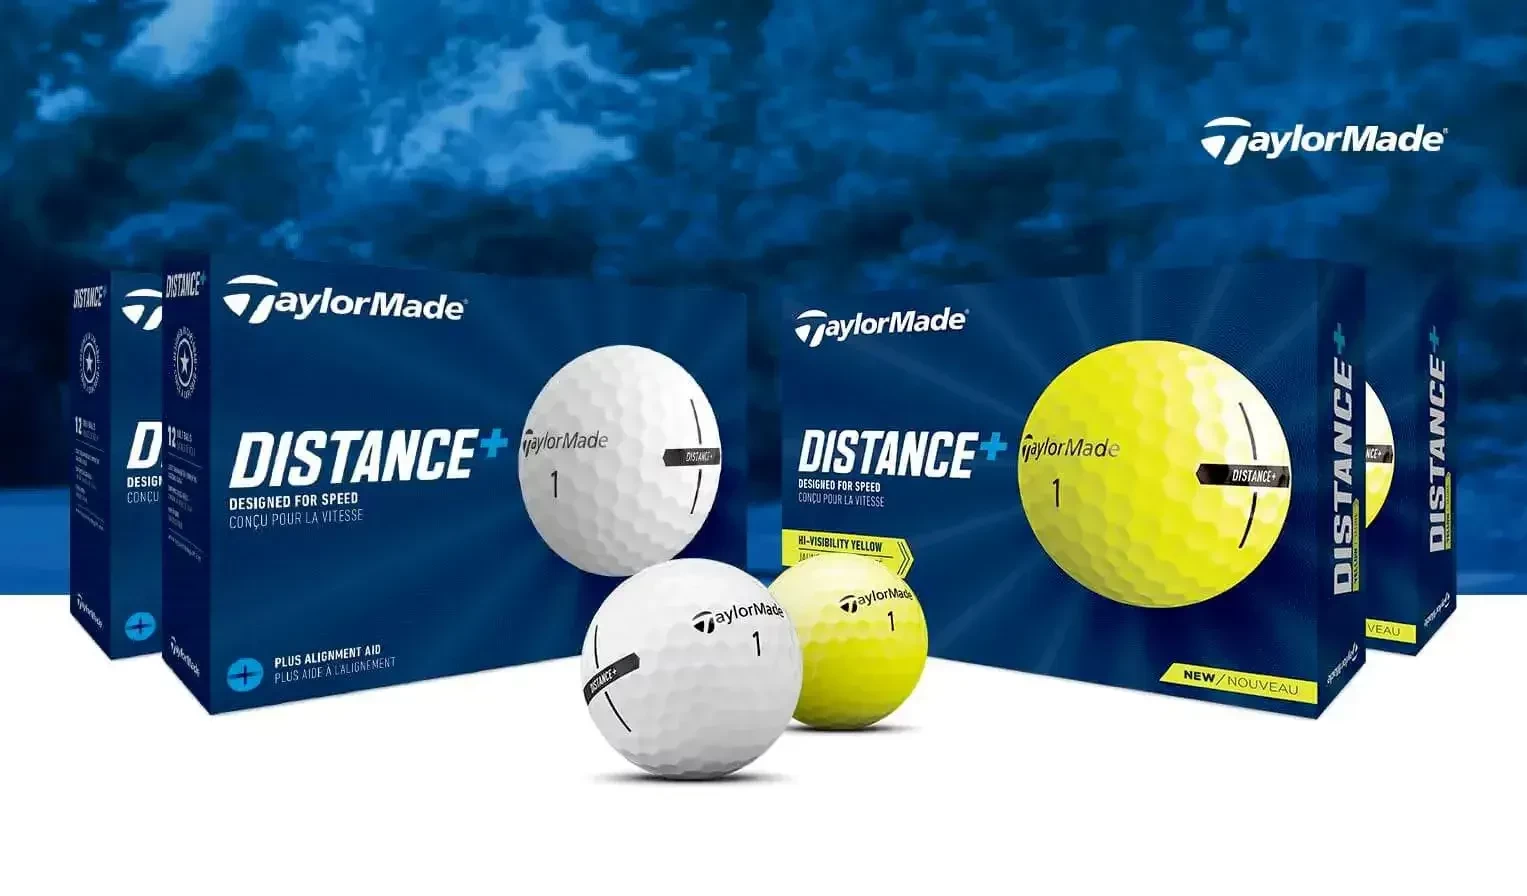 Distance+ Golf Set by golfballs.com